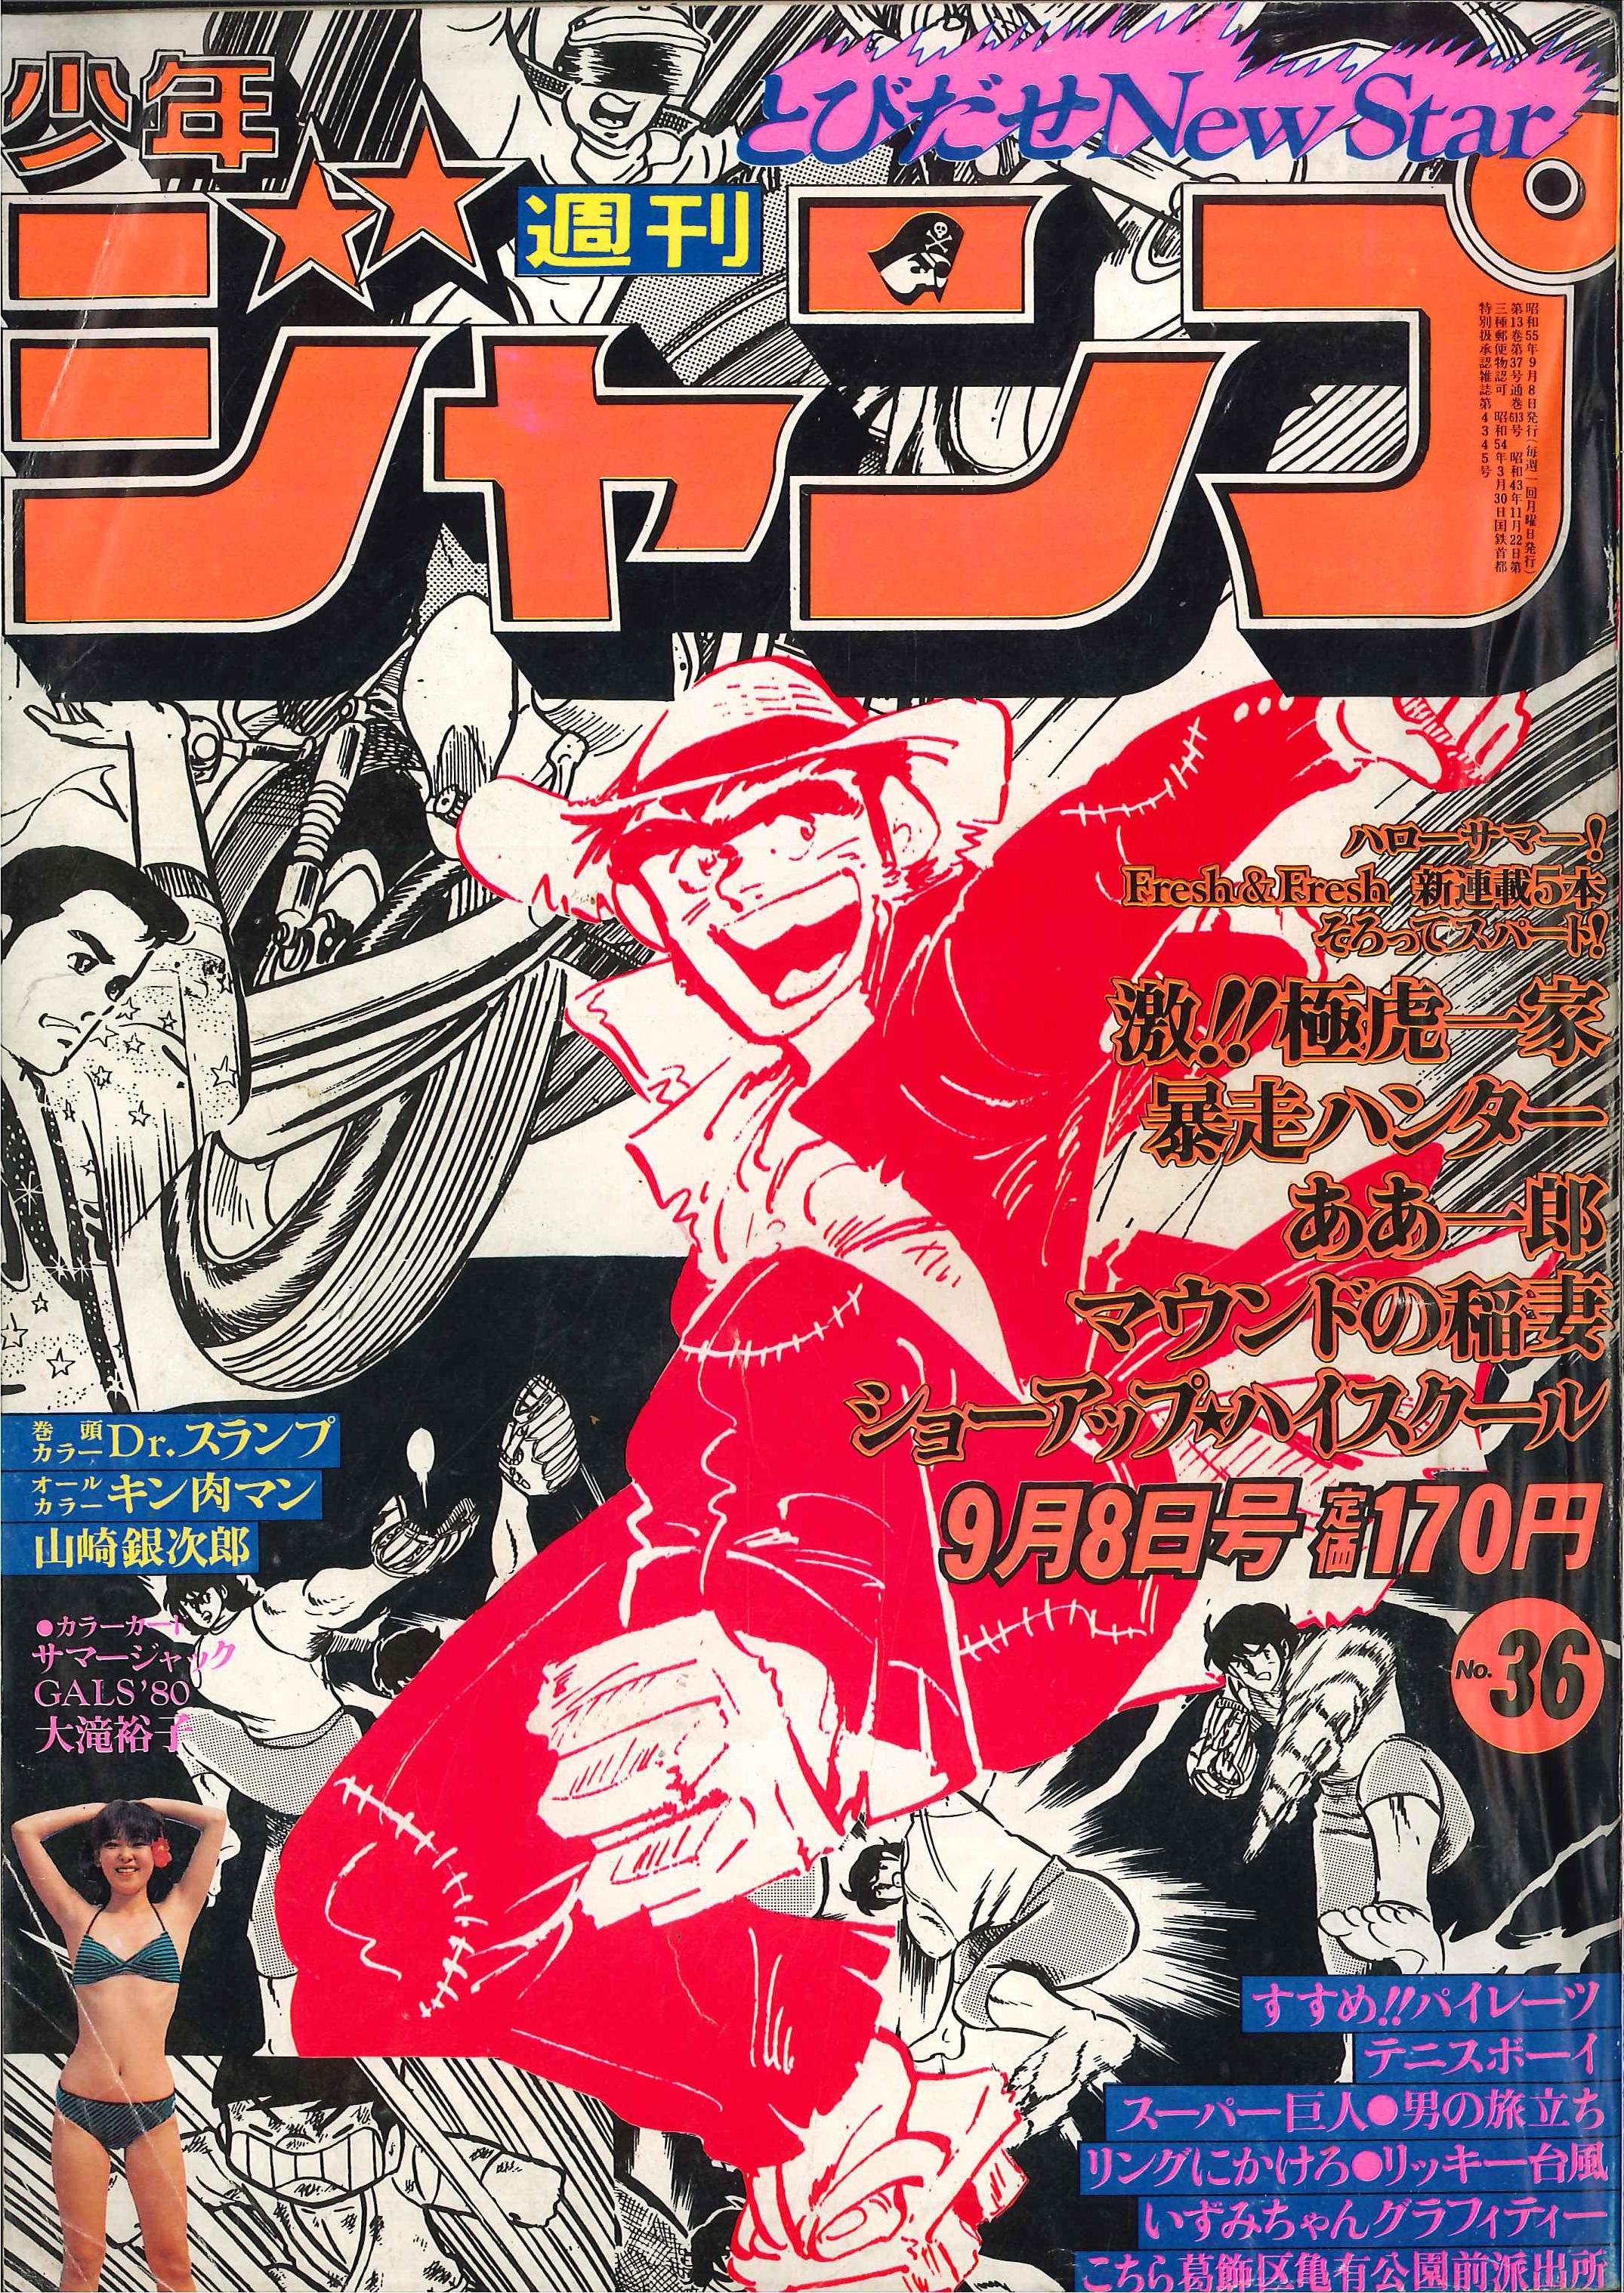 集英社 1980年 昭和55年 の漫画雑誌 週刊少年ジャンプ 1980年 昭和55年 36 8036 まんだらけ Mandarake